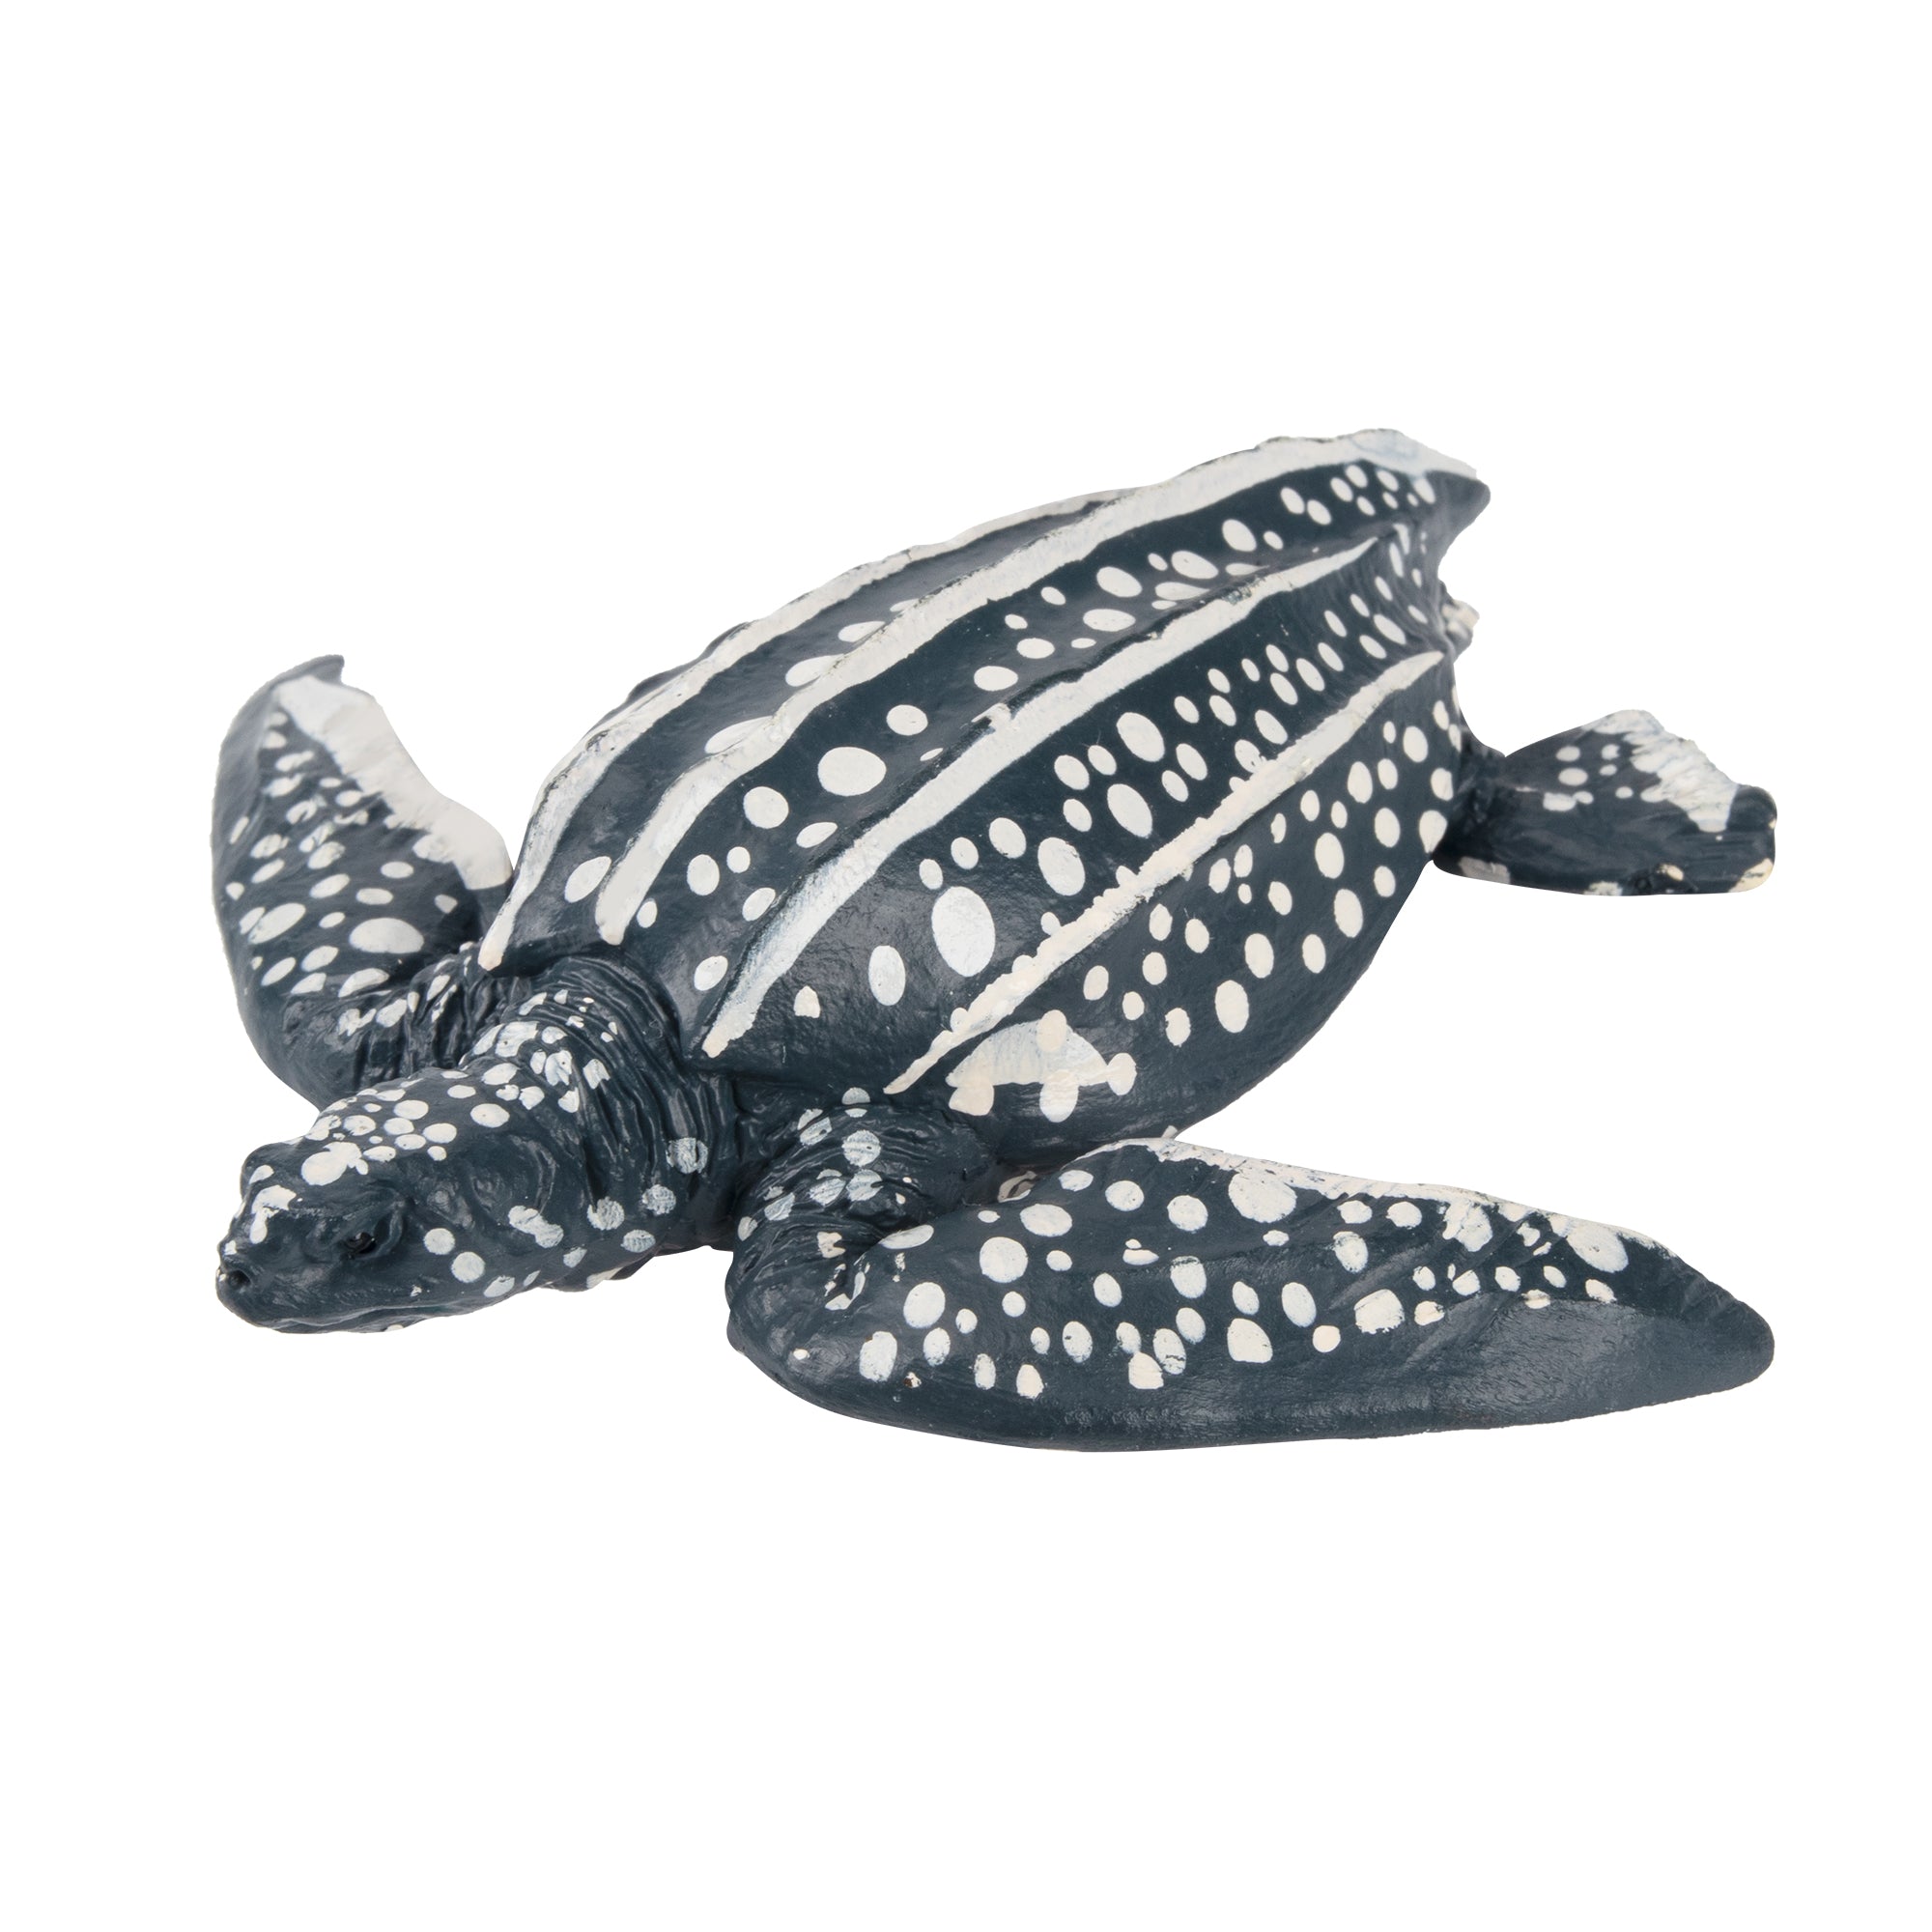 Toymany Leatherback Sea Turtle Figurine Toy